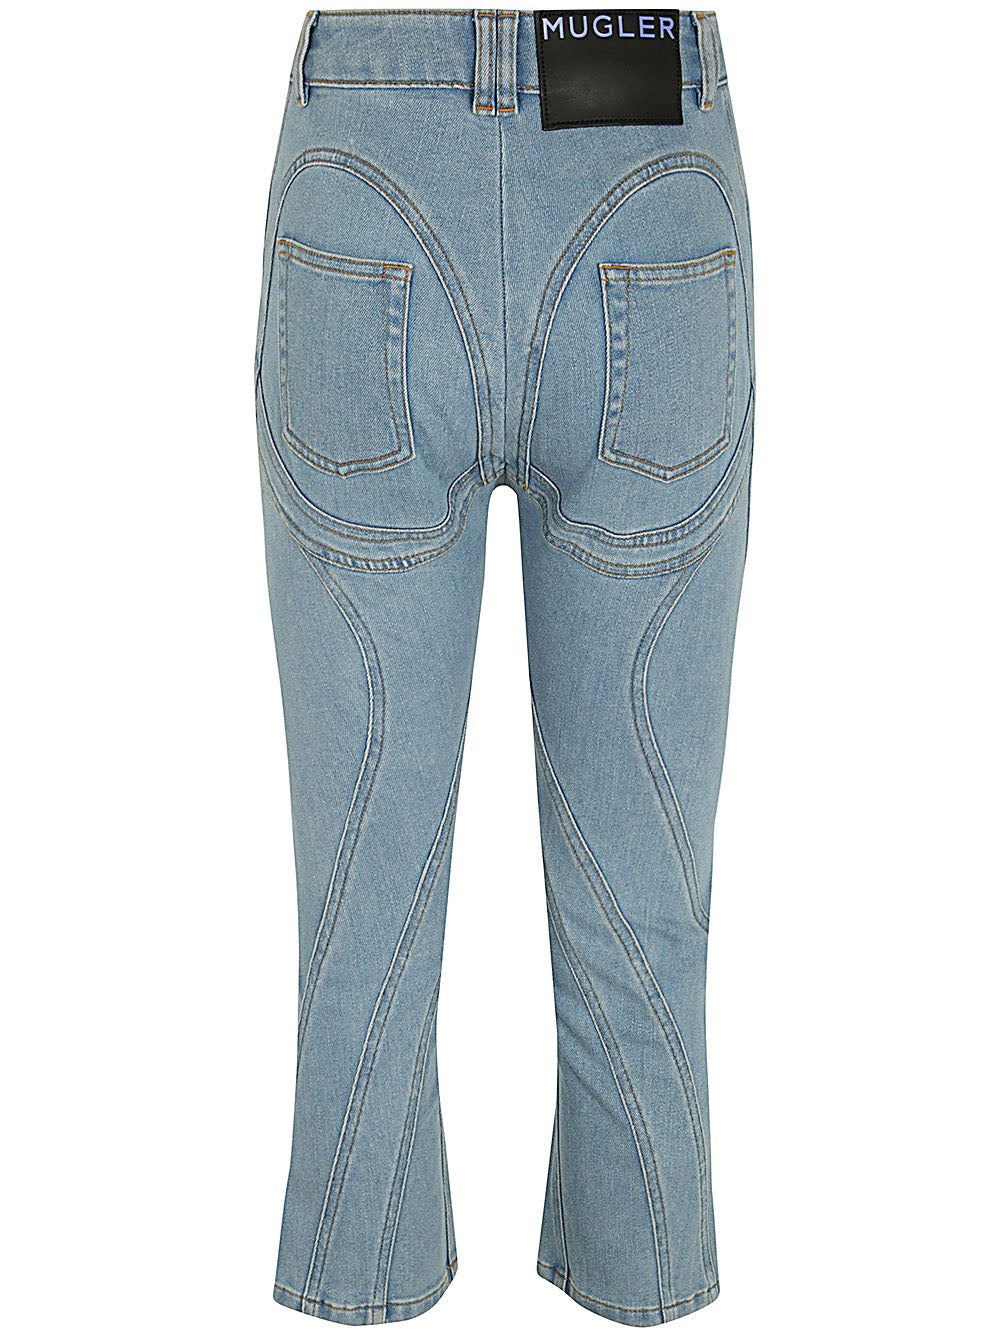 Pa0426 Jeans